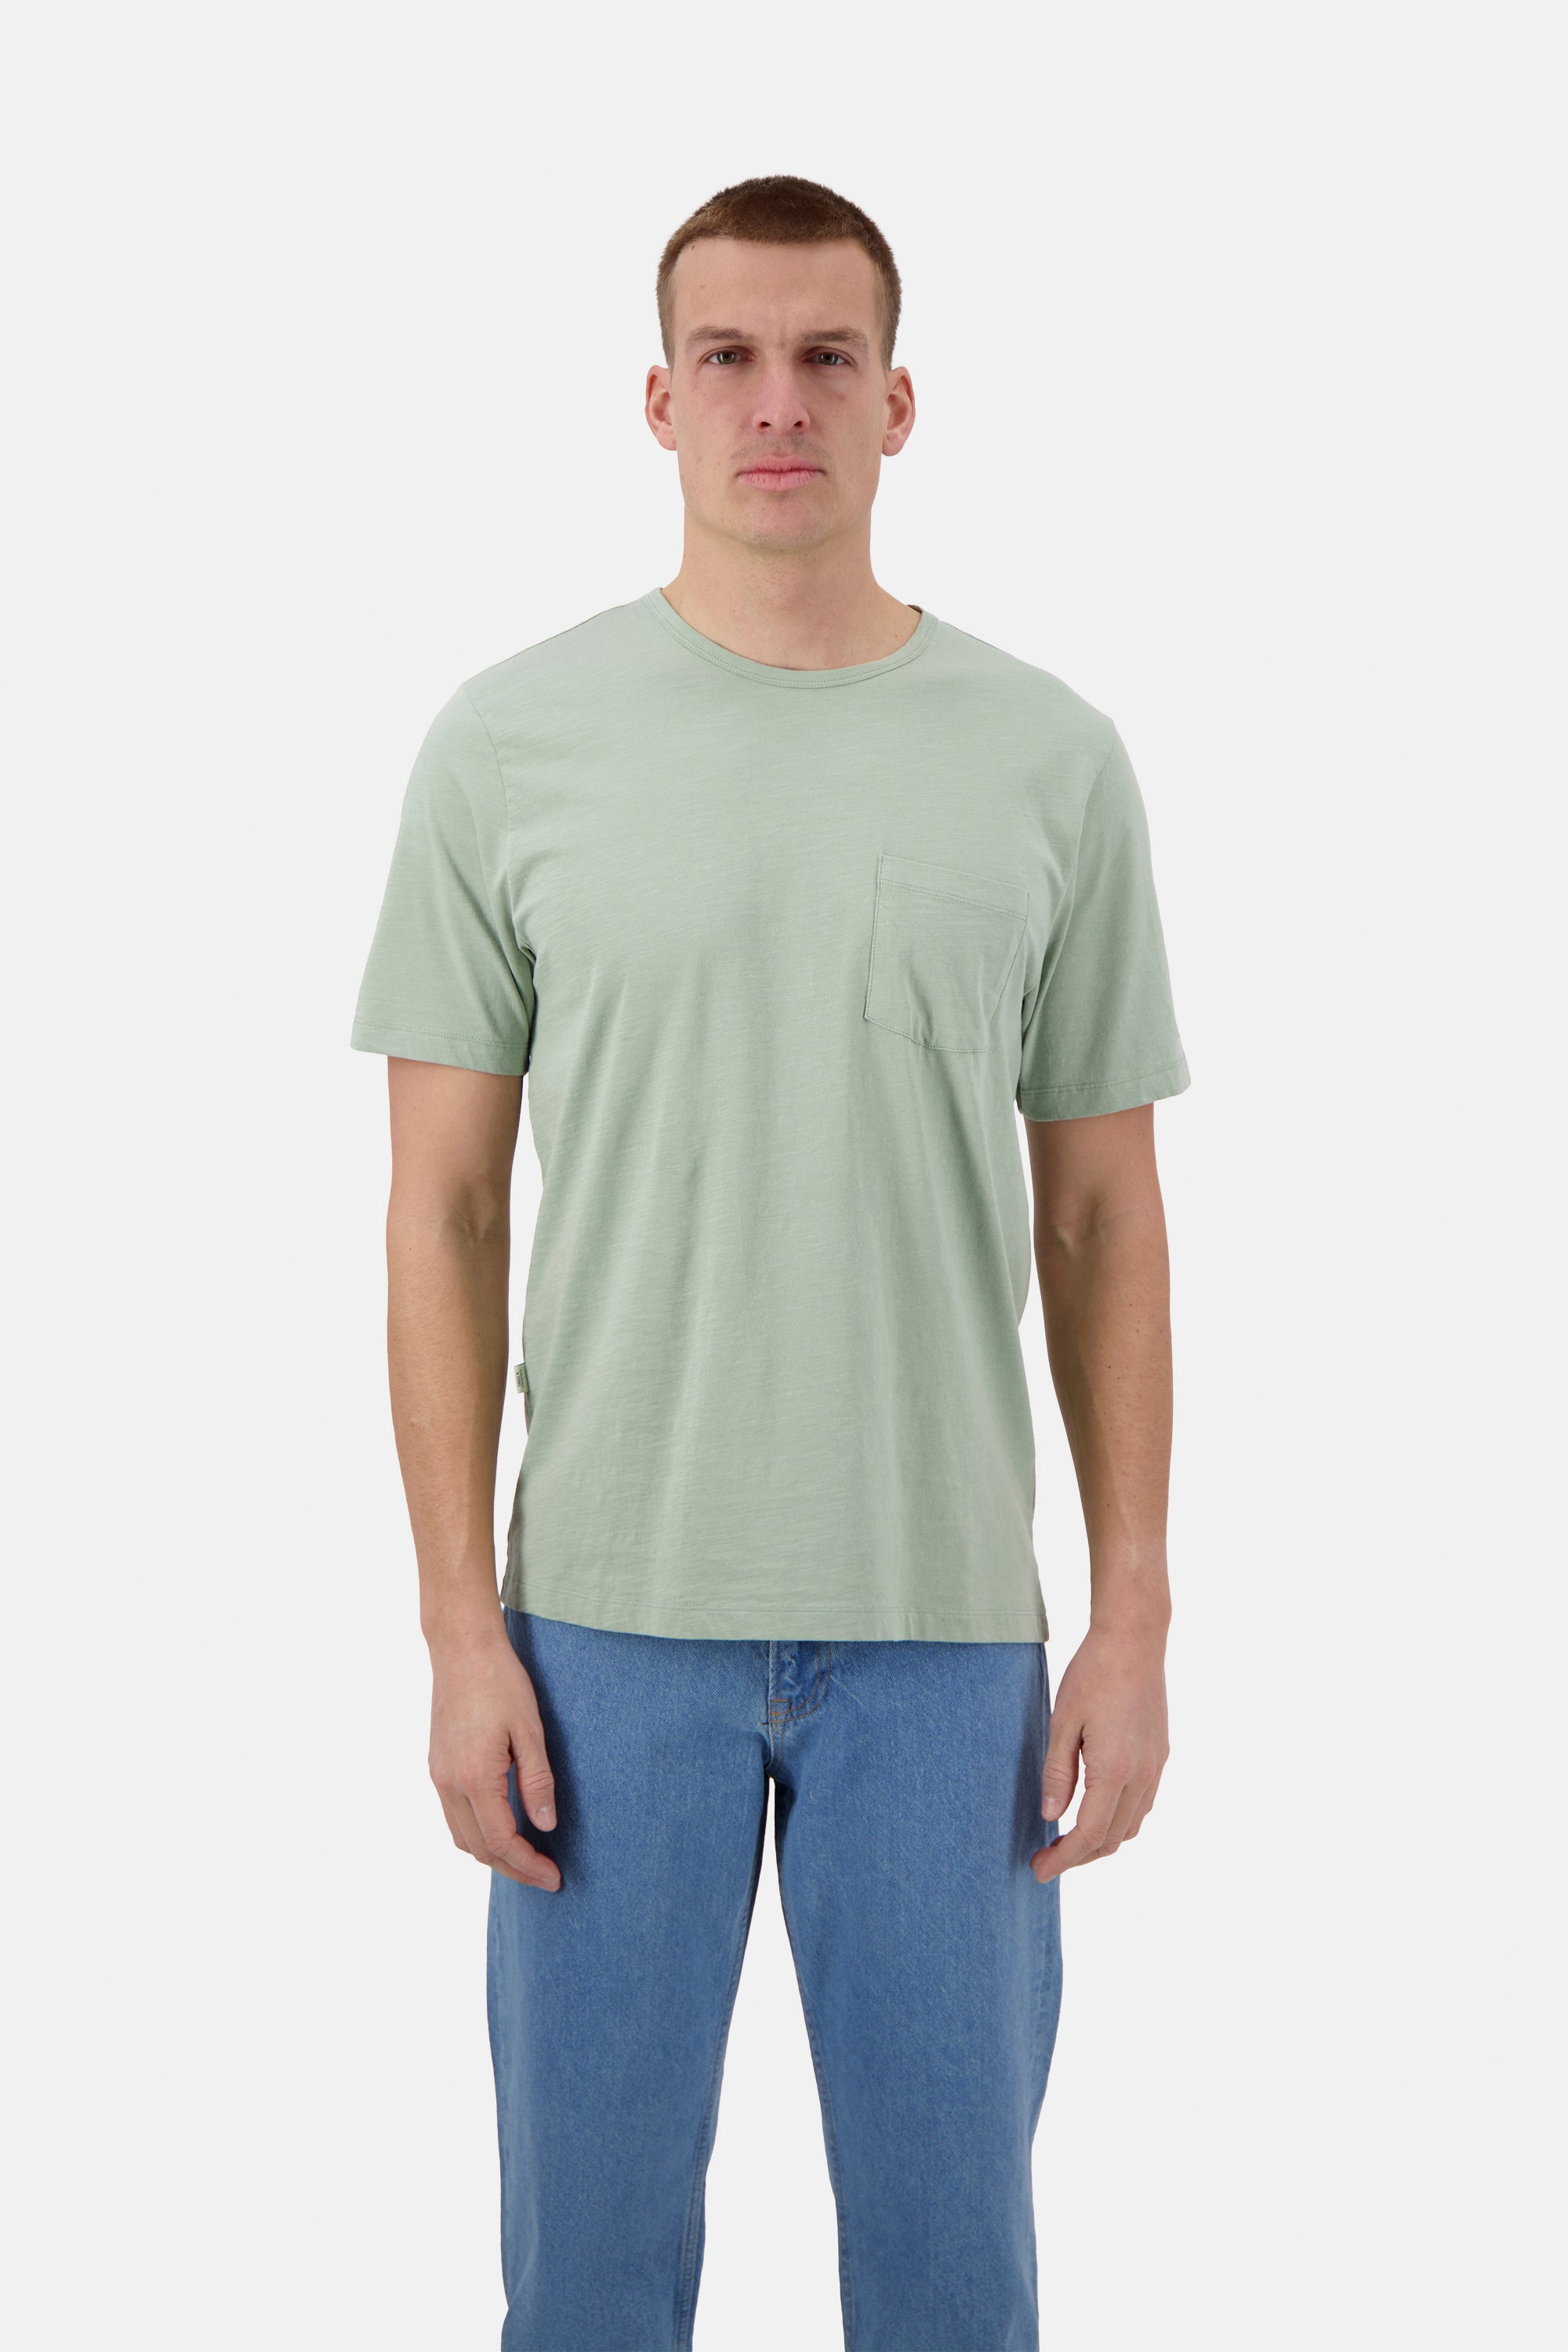 Herren T-Shirt Slub, hellgrün, 100% Baumwolle von Colours & Sons